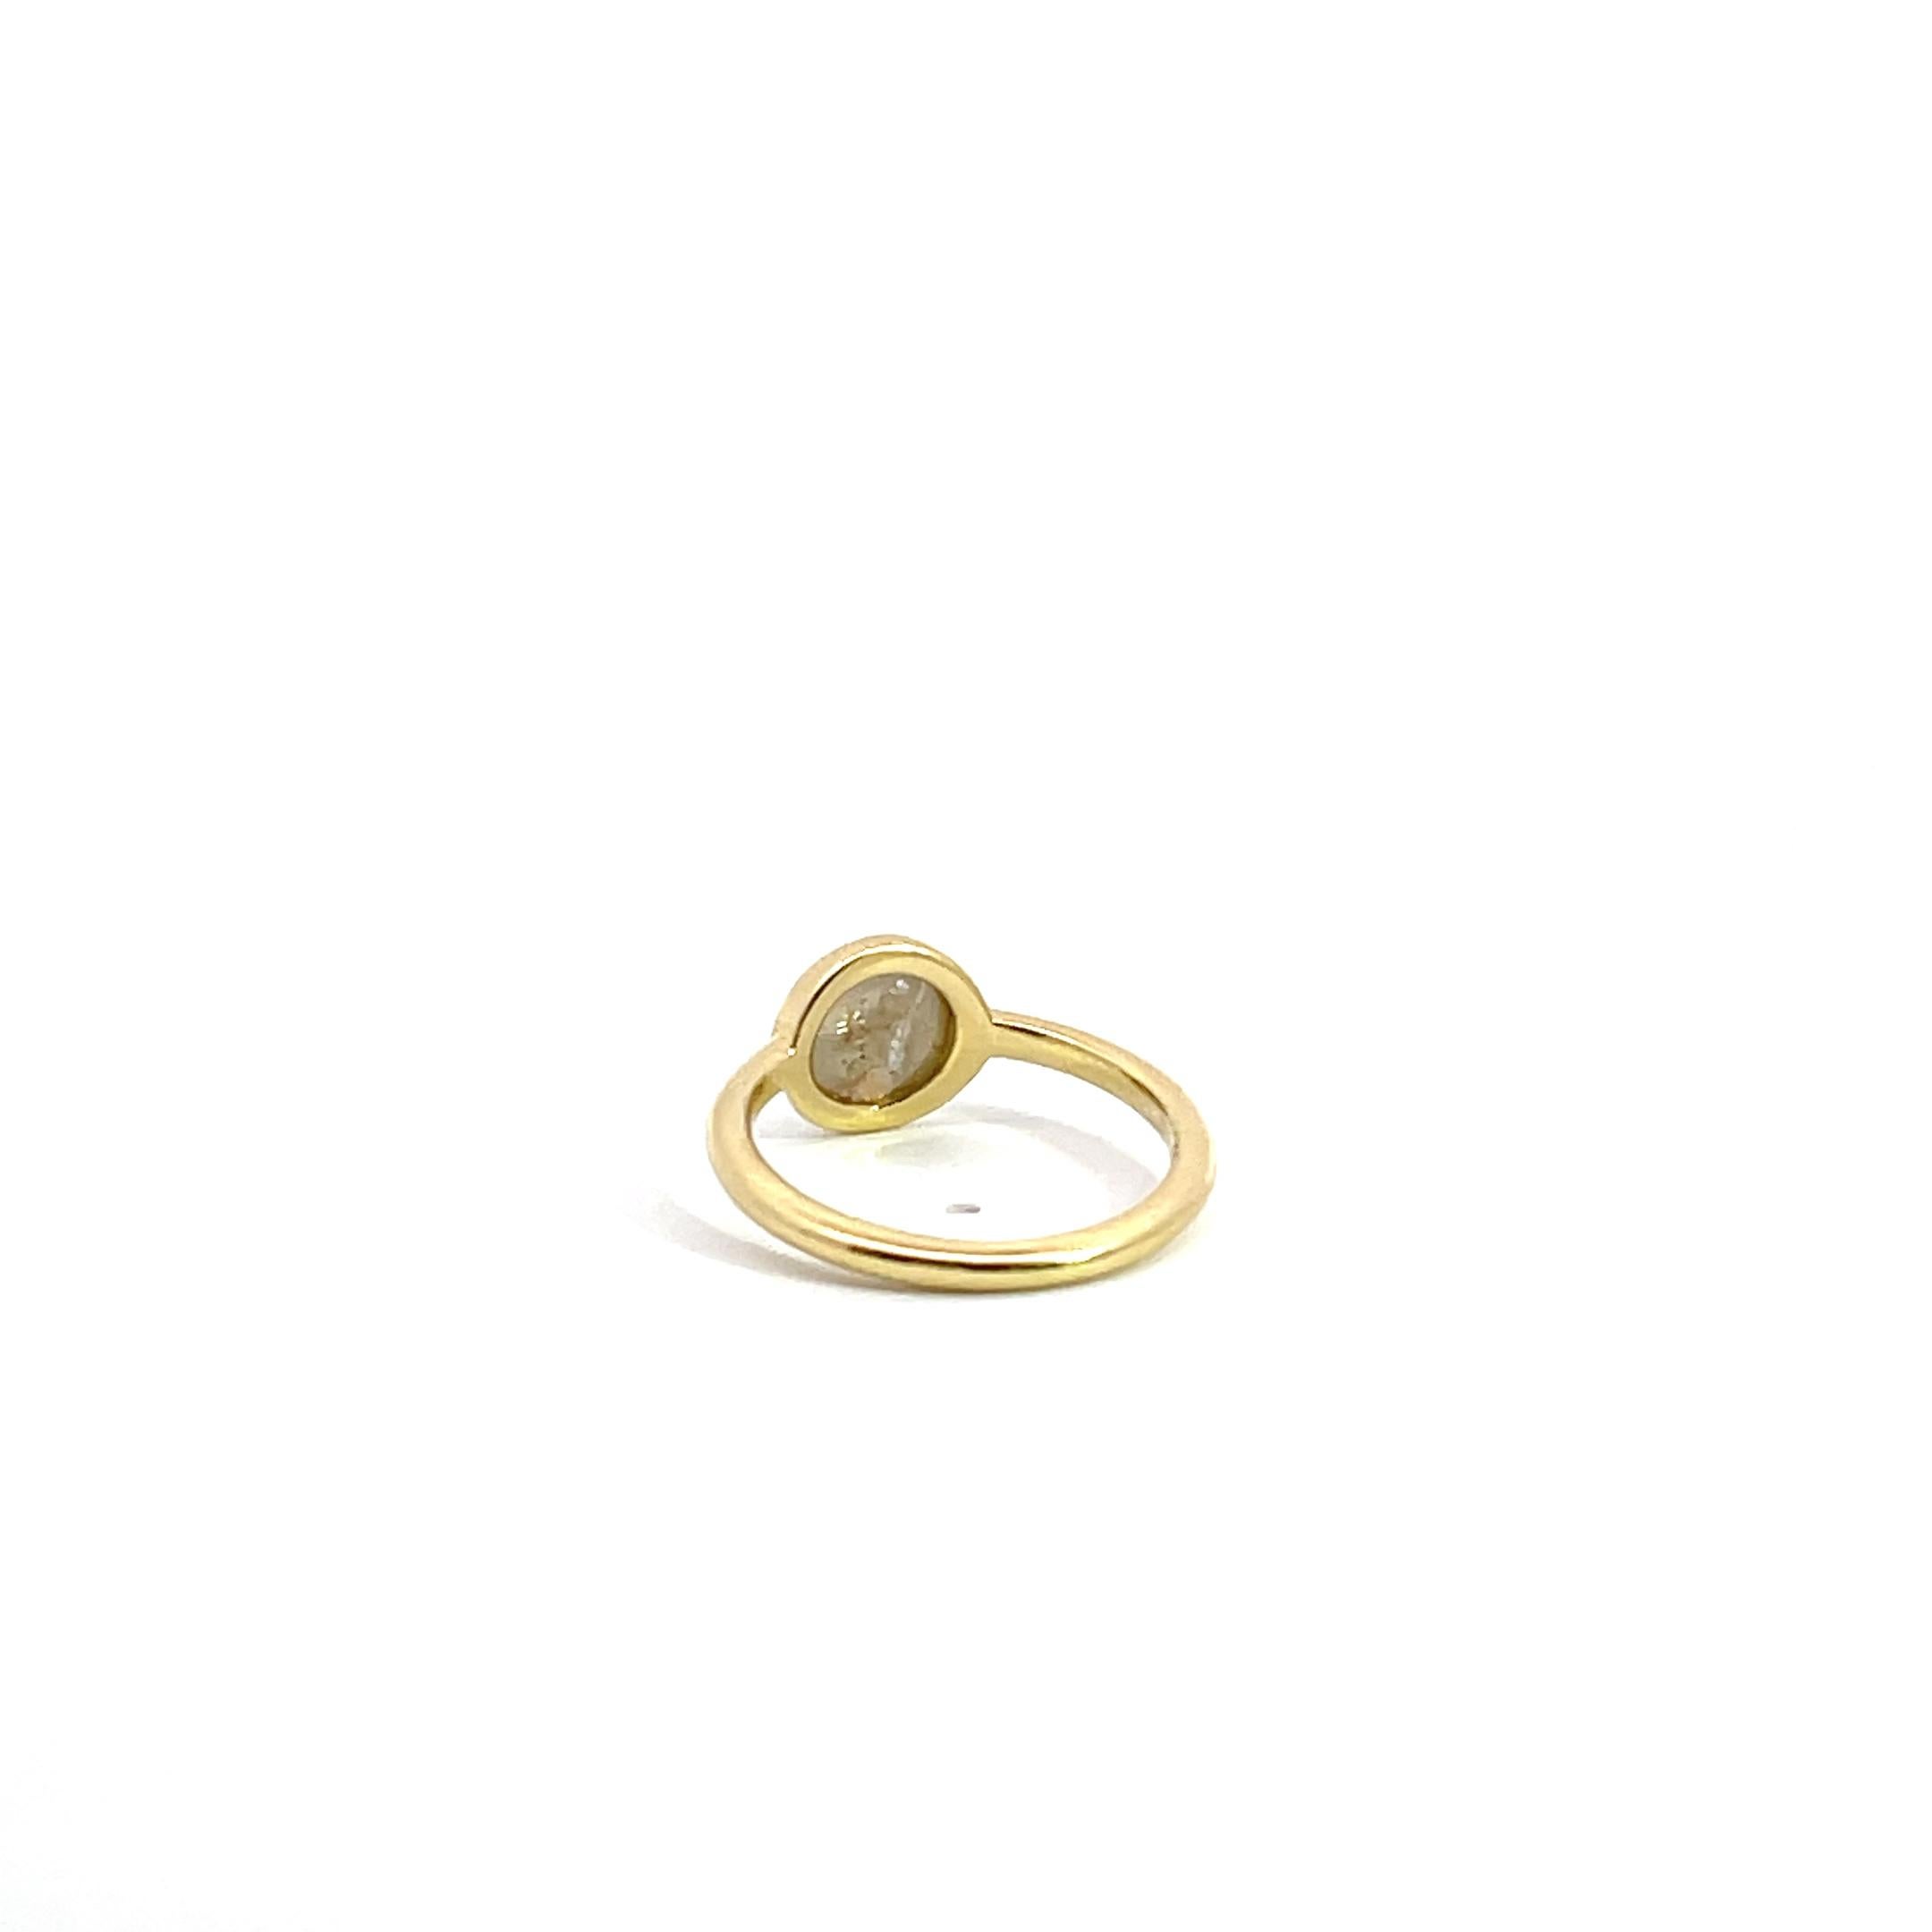 Ein Ring aus 18 Karat Gelbgold mit einem grauen Diamanten im Rosenschliff von 1,8 Karat. Dieser Ring wurde von llyn strong entworfen und hergestellt. 